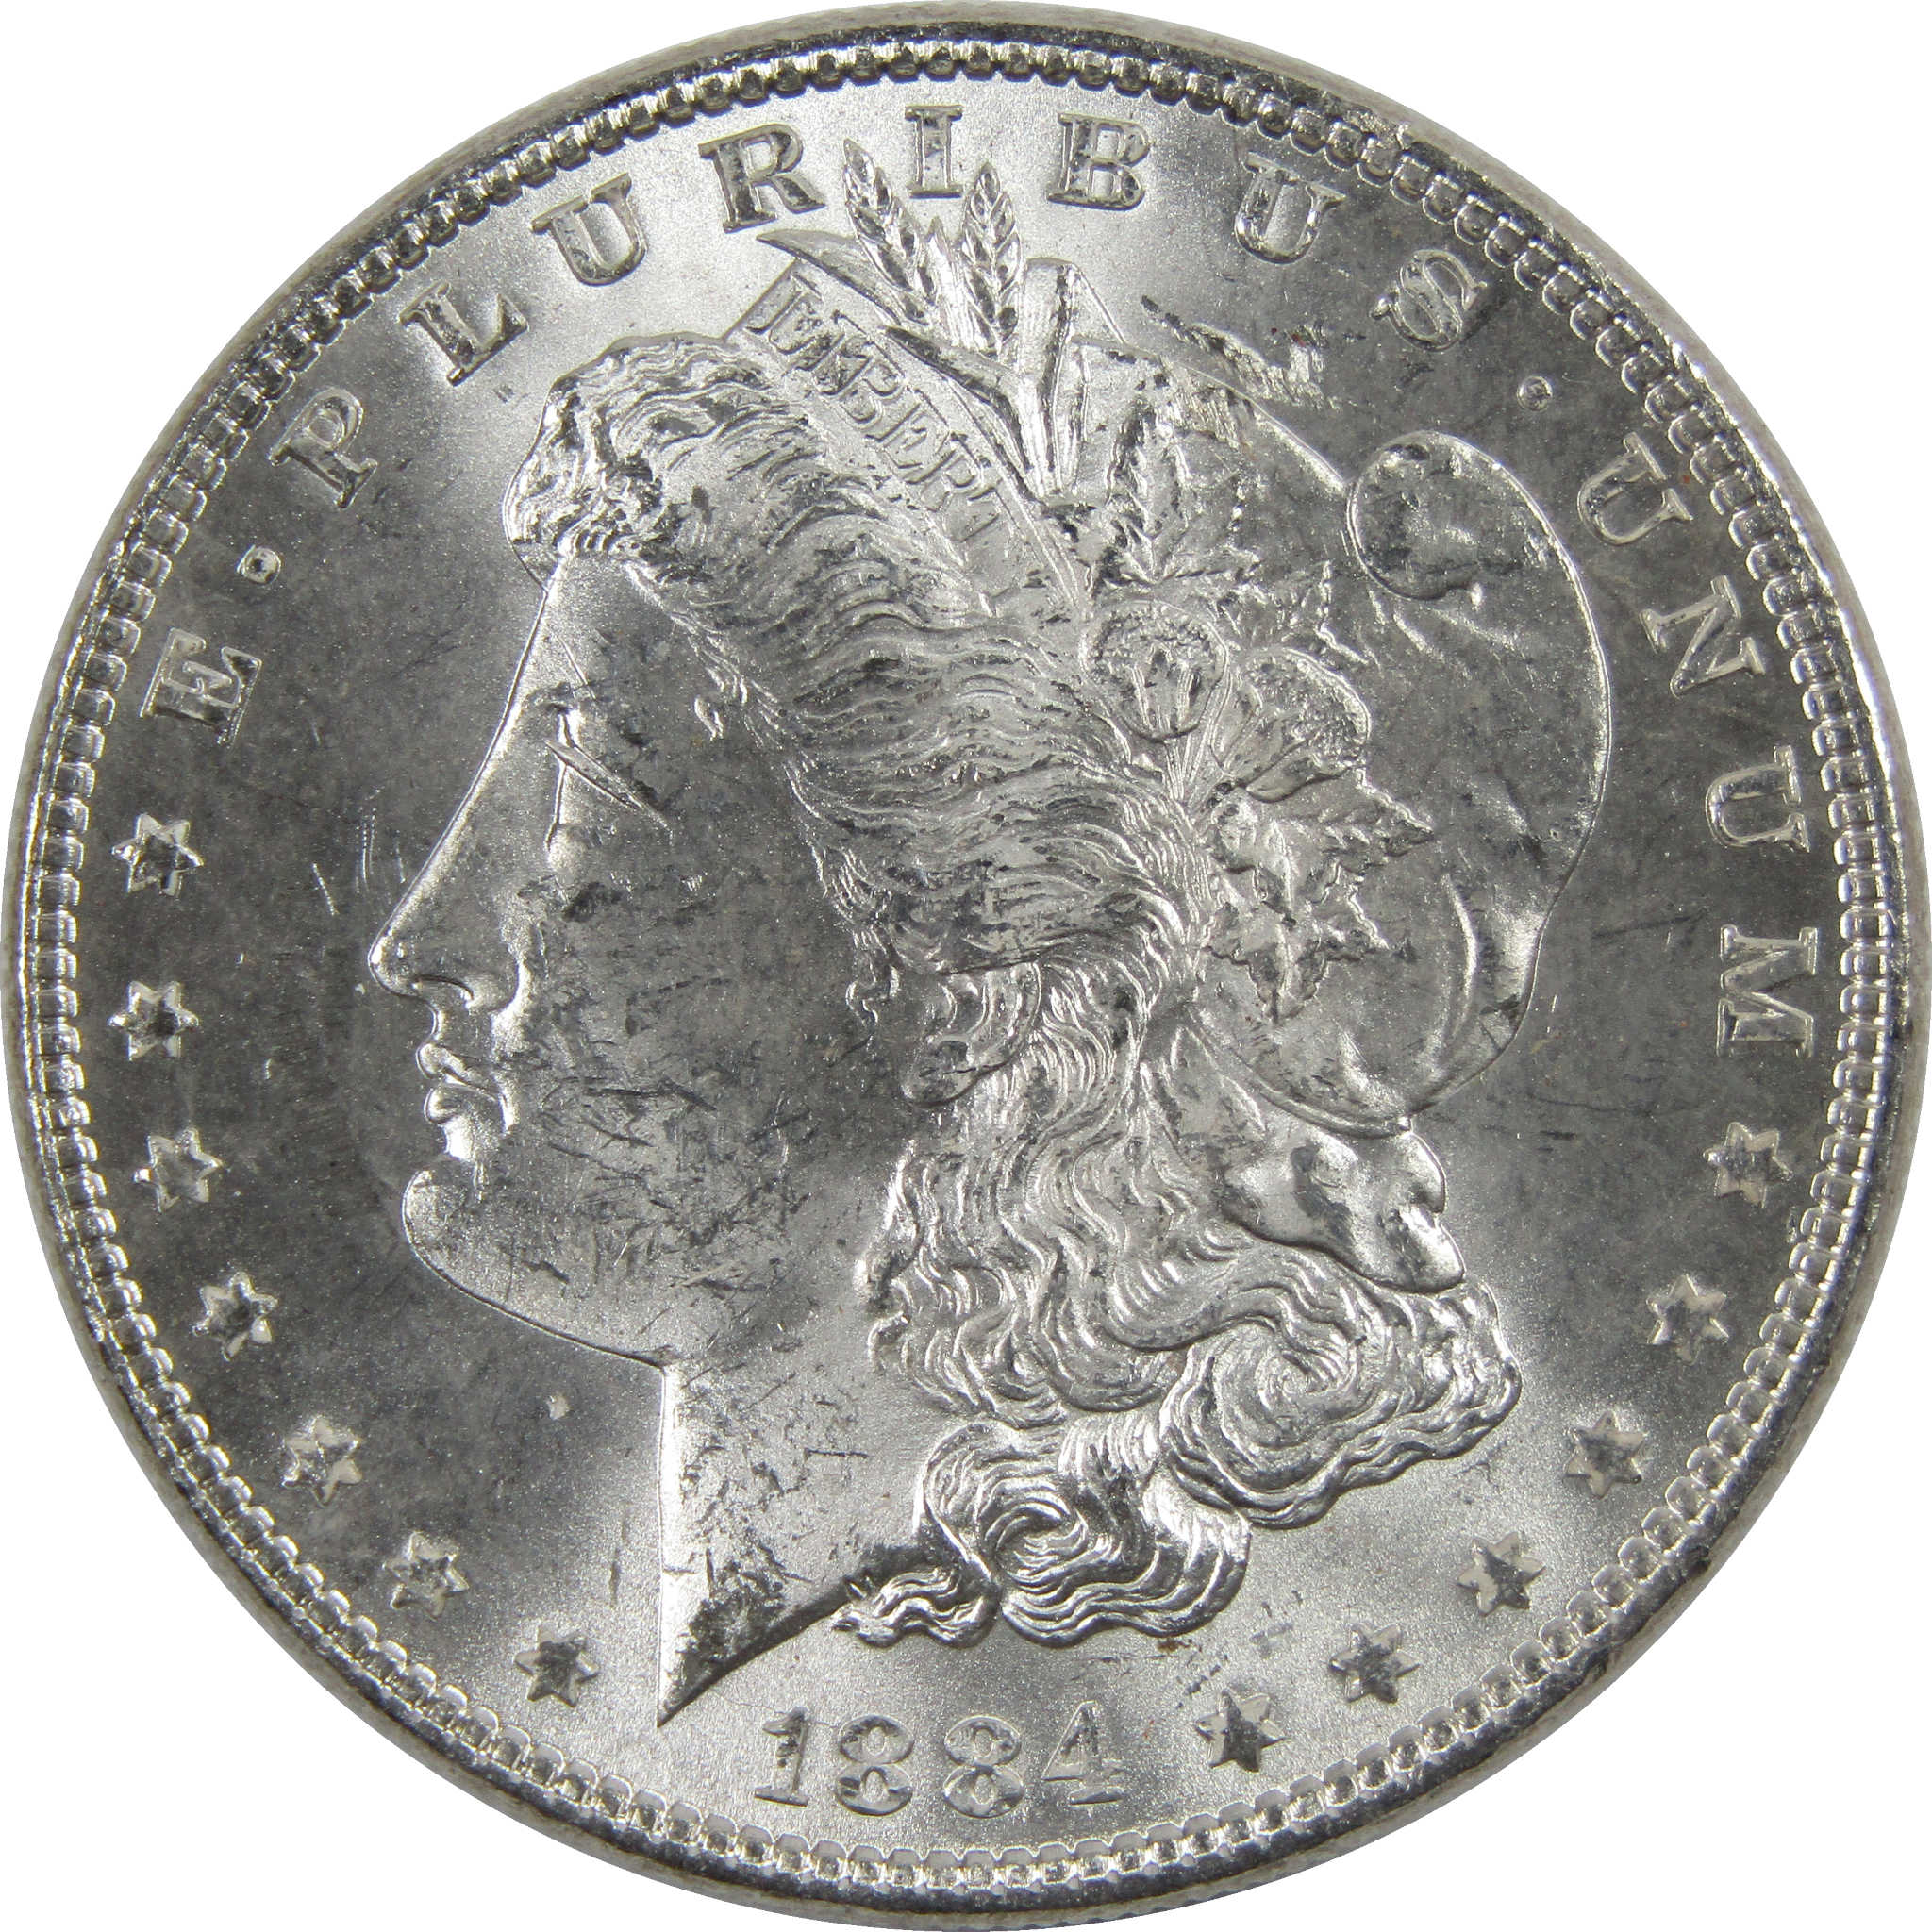 1884 Morgan Dollar BU Uncirculated 90% Silver $1 Coin SKU:I6018 - Morgan coin - Morgan silver dollar - Morgan silver dollar for sale - Profile Coins &amp; Collectibles